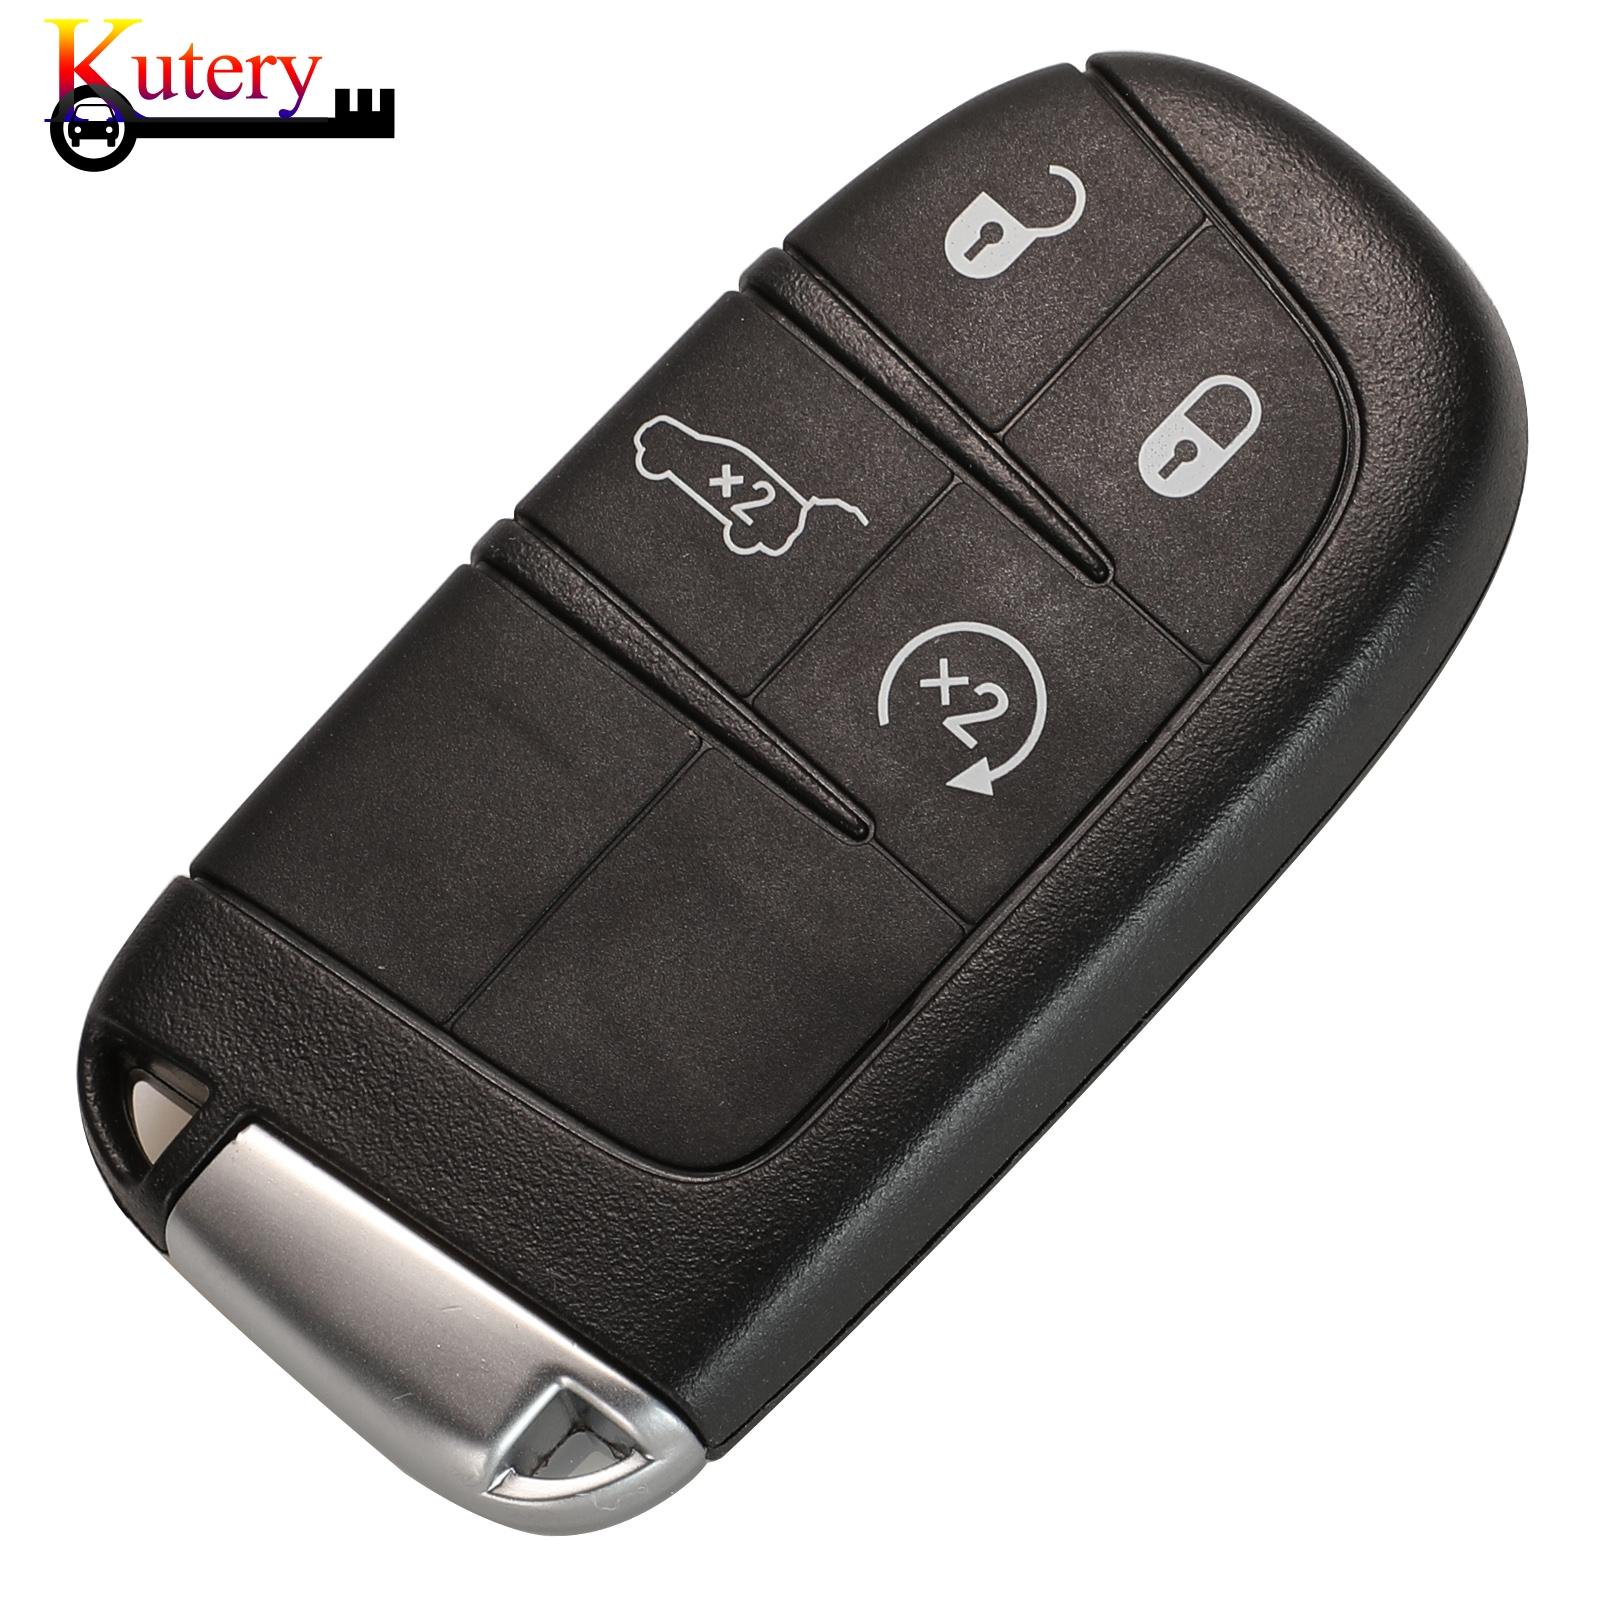 Изображение товара: Оригинальный дистанционный умный Автомобильный ключ Kutery для Jeep Renegade Compass 2/3/4 кнопочный телефон 433 МГц 4A чип без ключа-Go SIP22 Blade